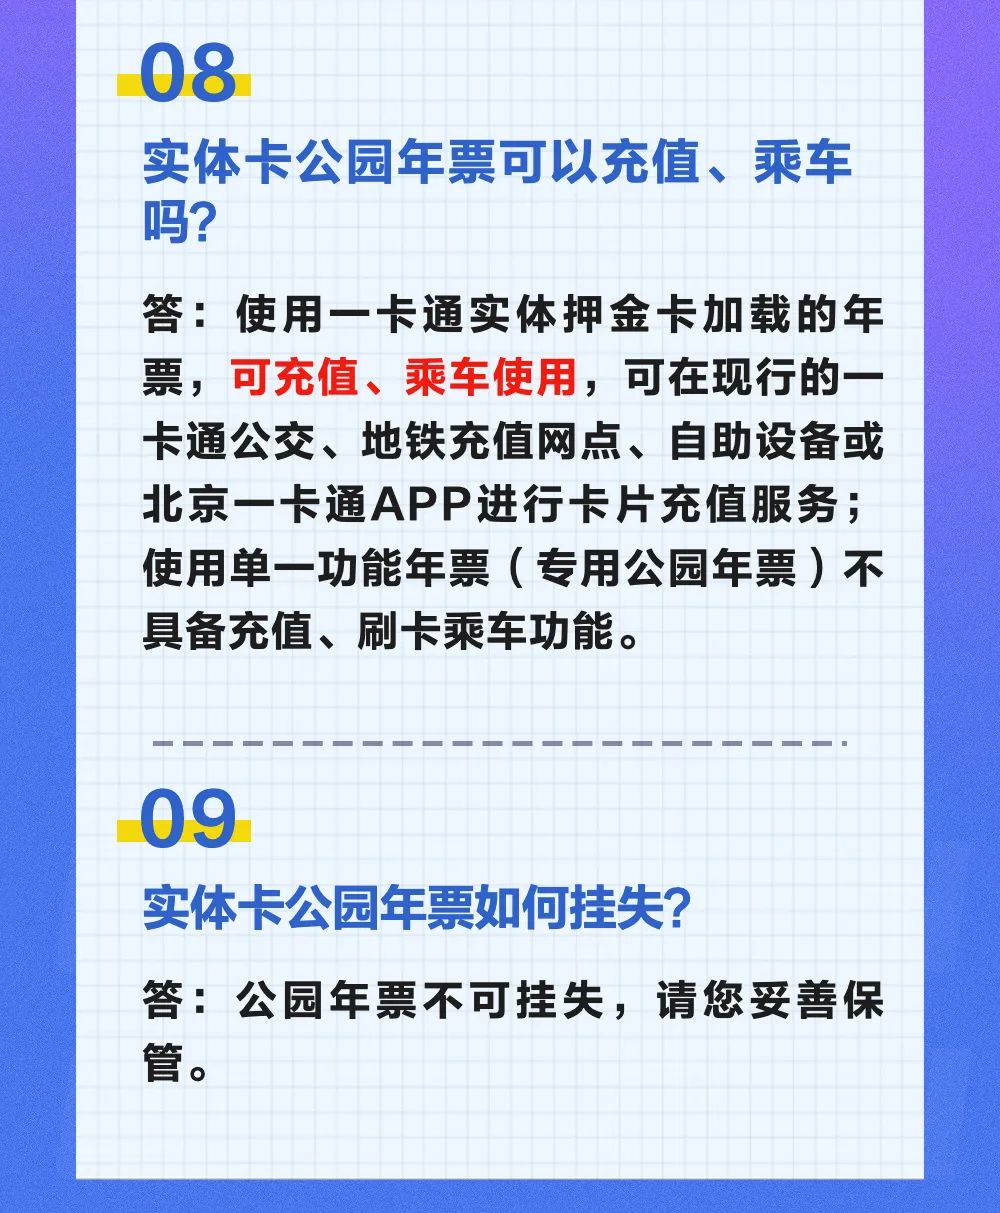 北京公园游览年票有哪些类型？怎么办理？20个问题快问快答